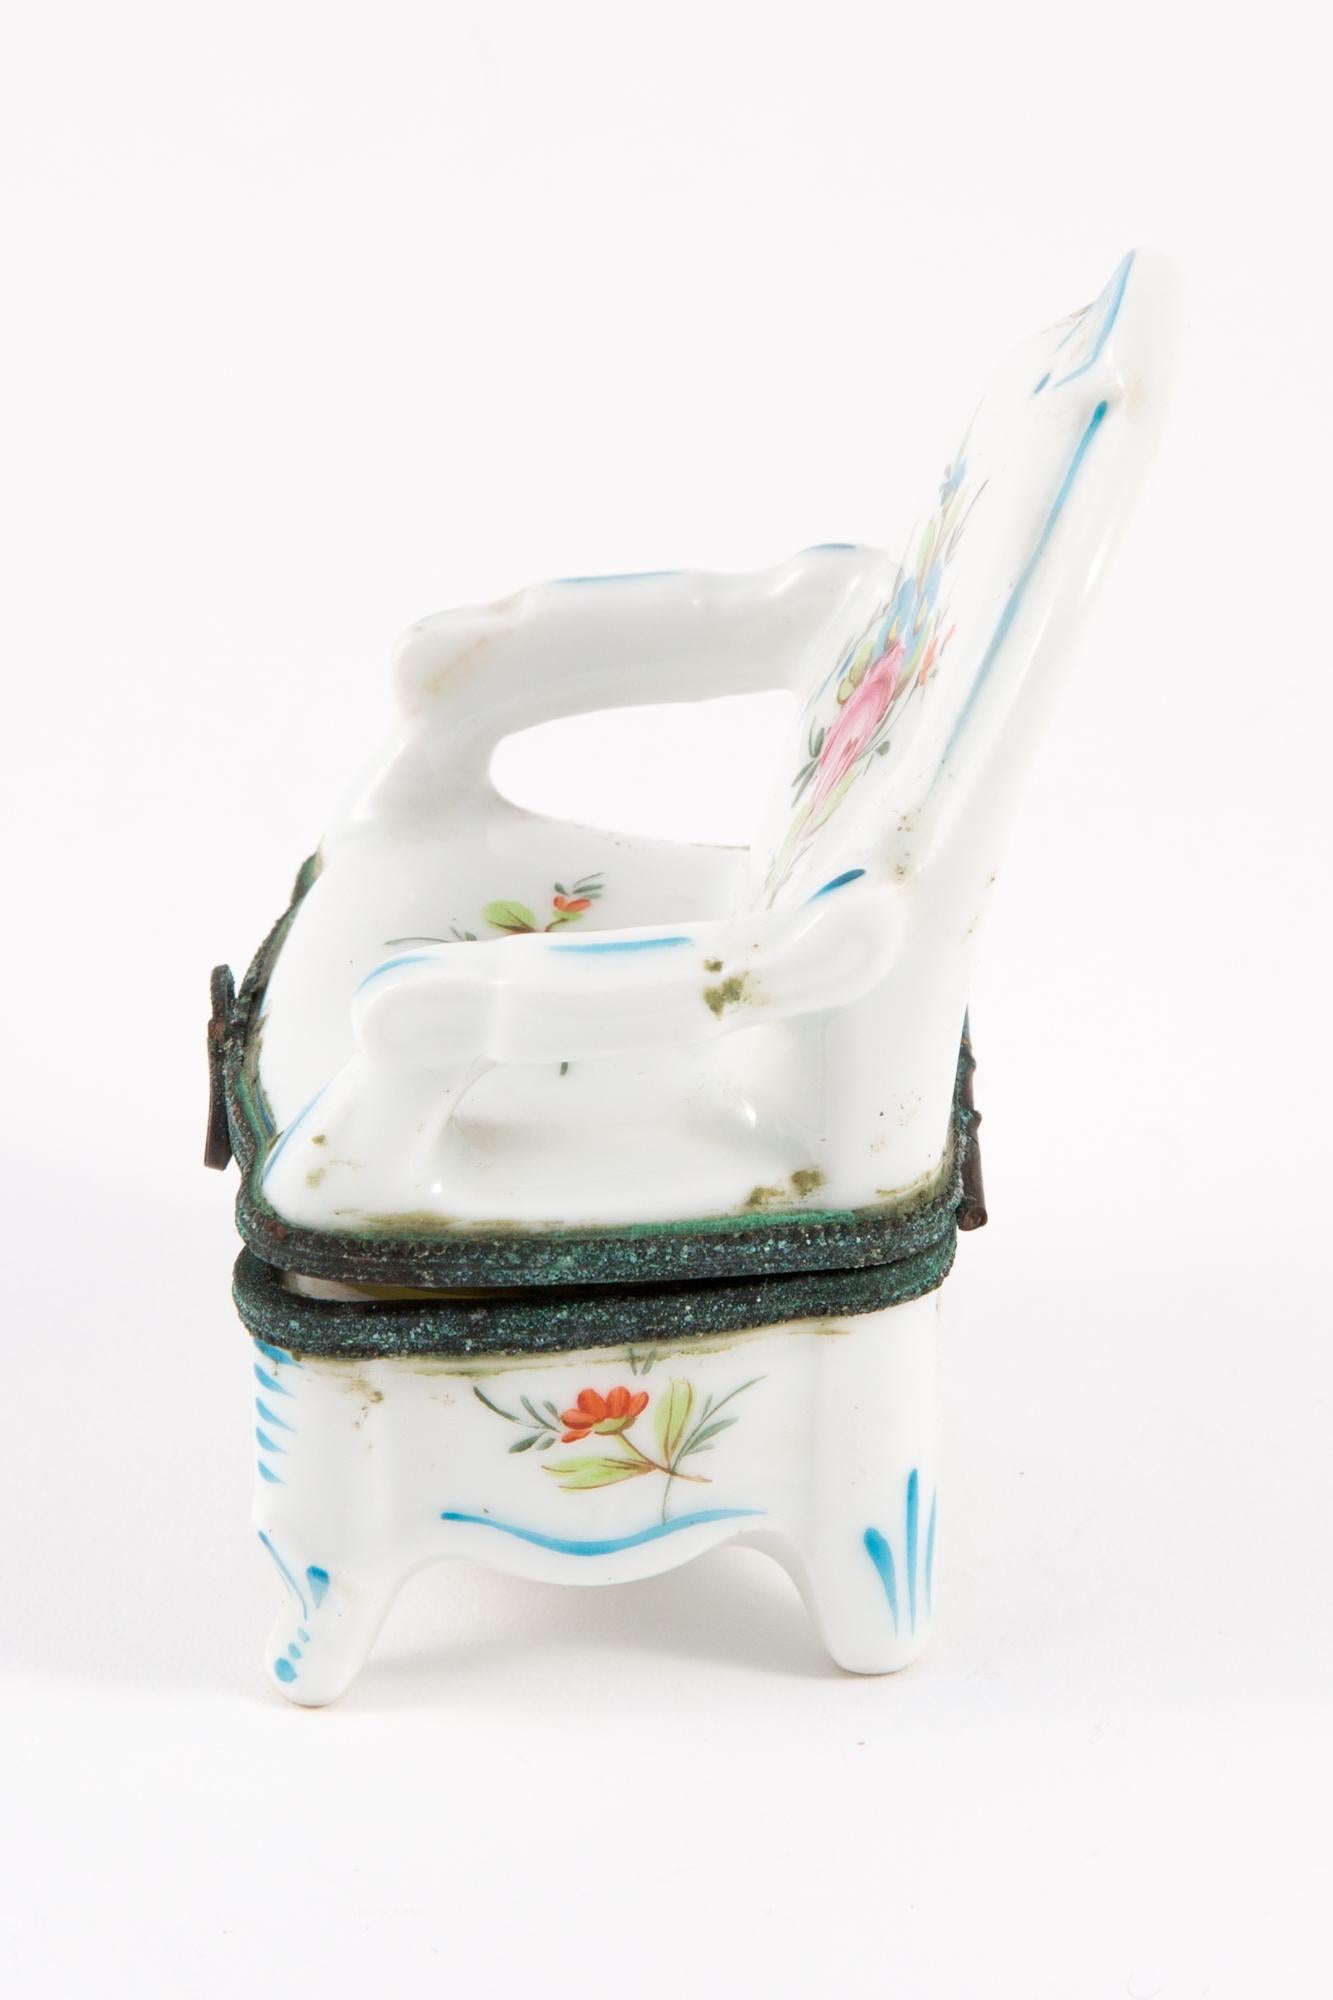 Boîte à bijoux en porcelaine en forme de fauteuil, décorée d'une faïence, d'un sous cachet.
En bon état vintage. Fabriqué en France. 
Longueur 7 cm (2,7 pouces)
Largeur 5,5 cm
Hauteur : 10 cm (3,9 pouces)
Nous garantissons que vous recevrez cet